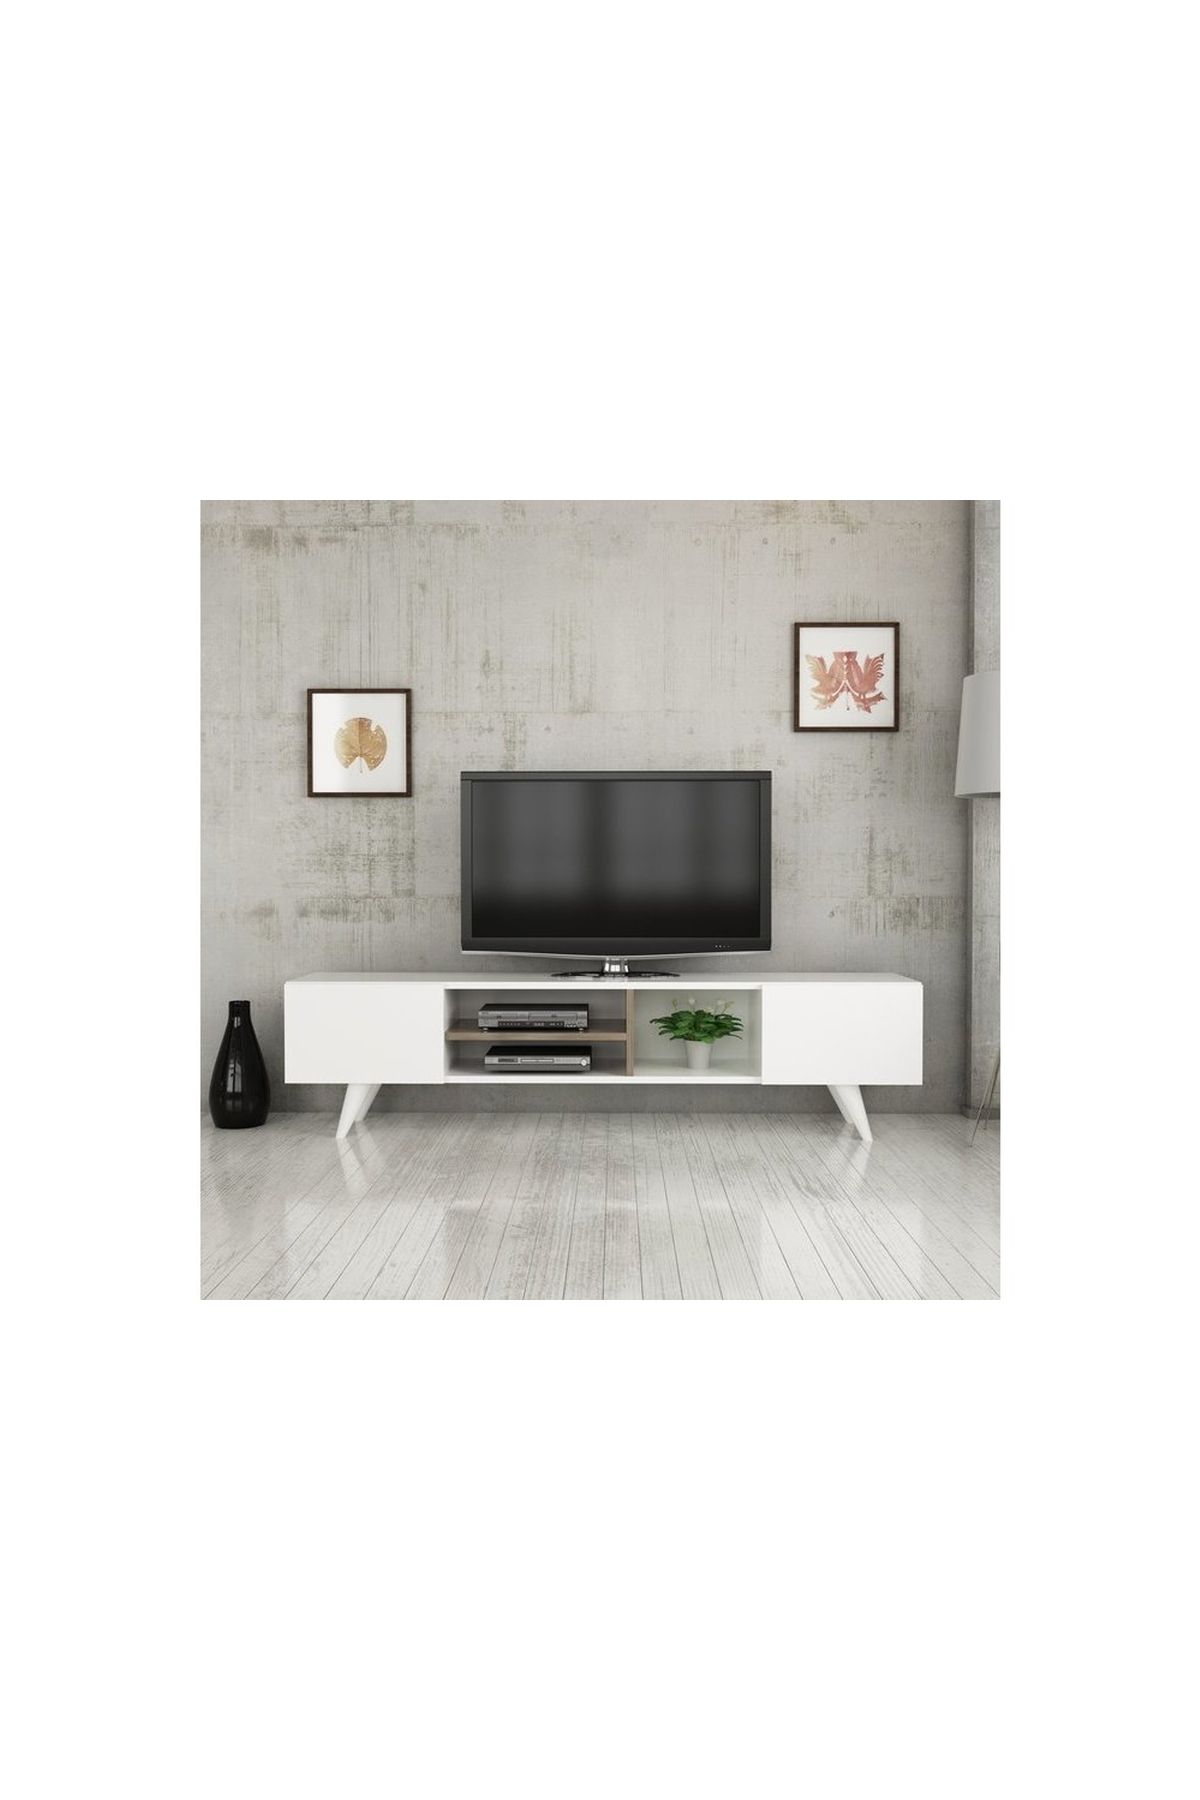 Vivense Dore Tv Sehpası, Beyaz, 160 Cm